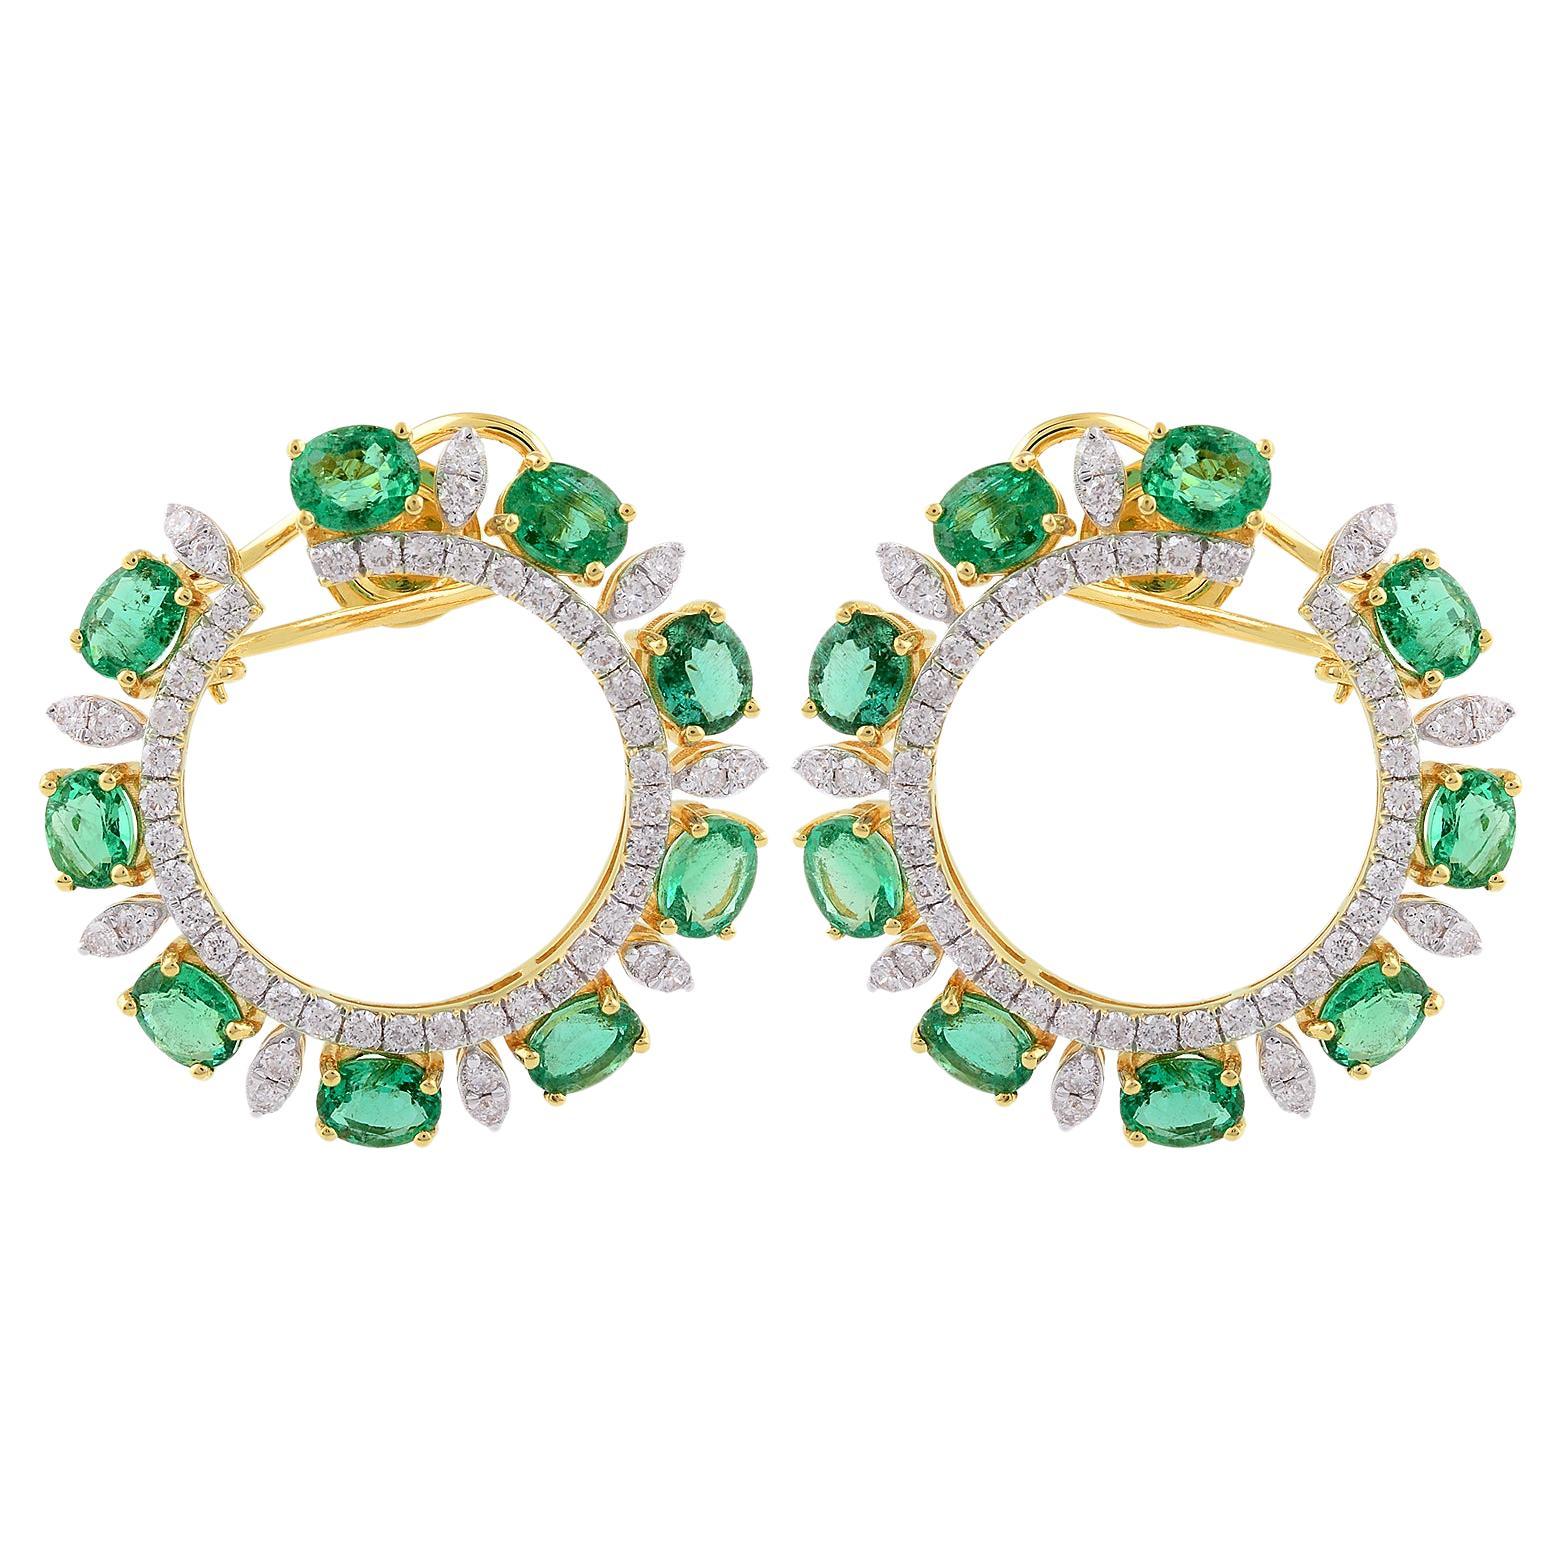 Ovaler sambischer Smaragd-Edelstein-Ohrringe mit Hebelverschluss aus 14 Karat Gelbgold